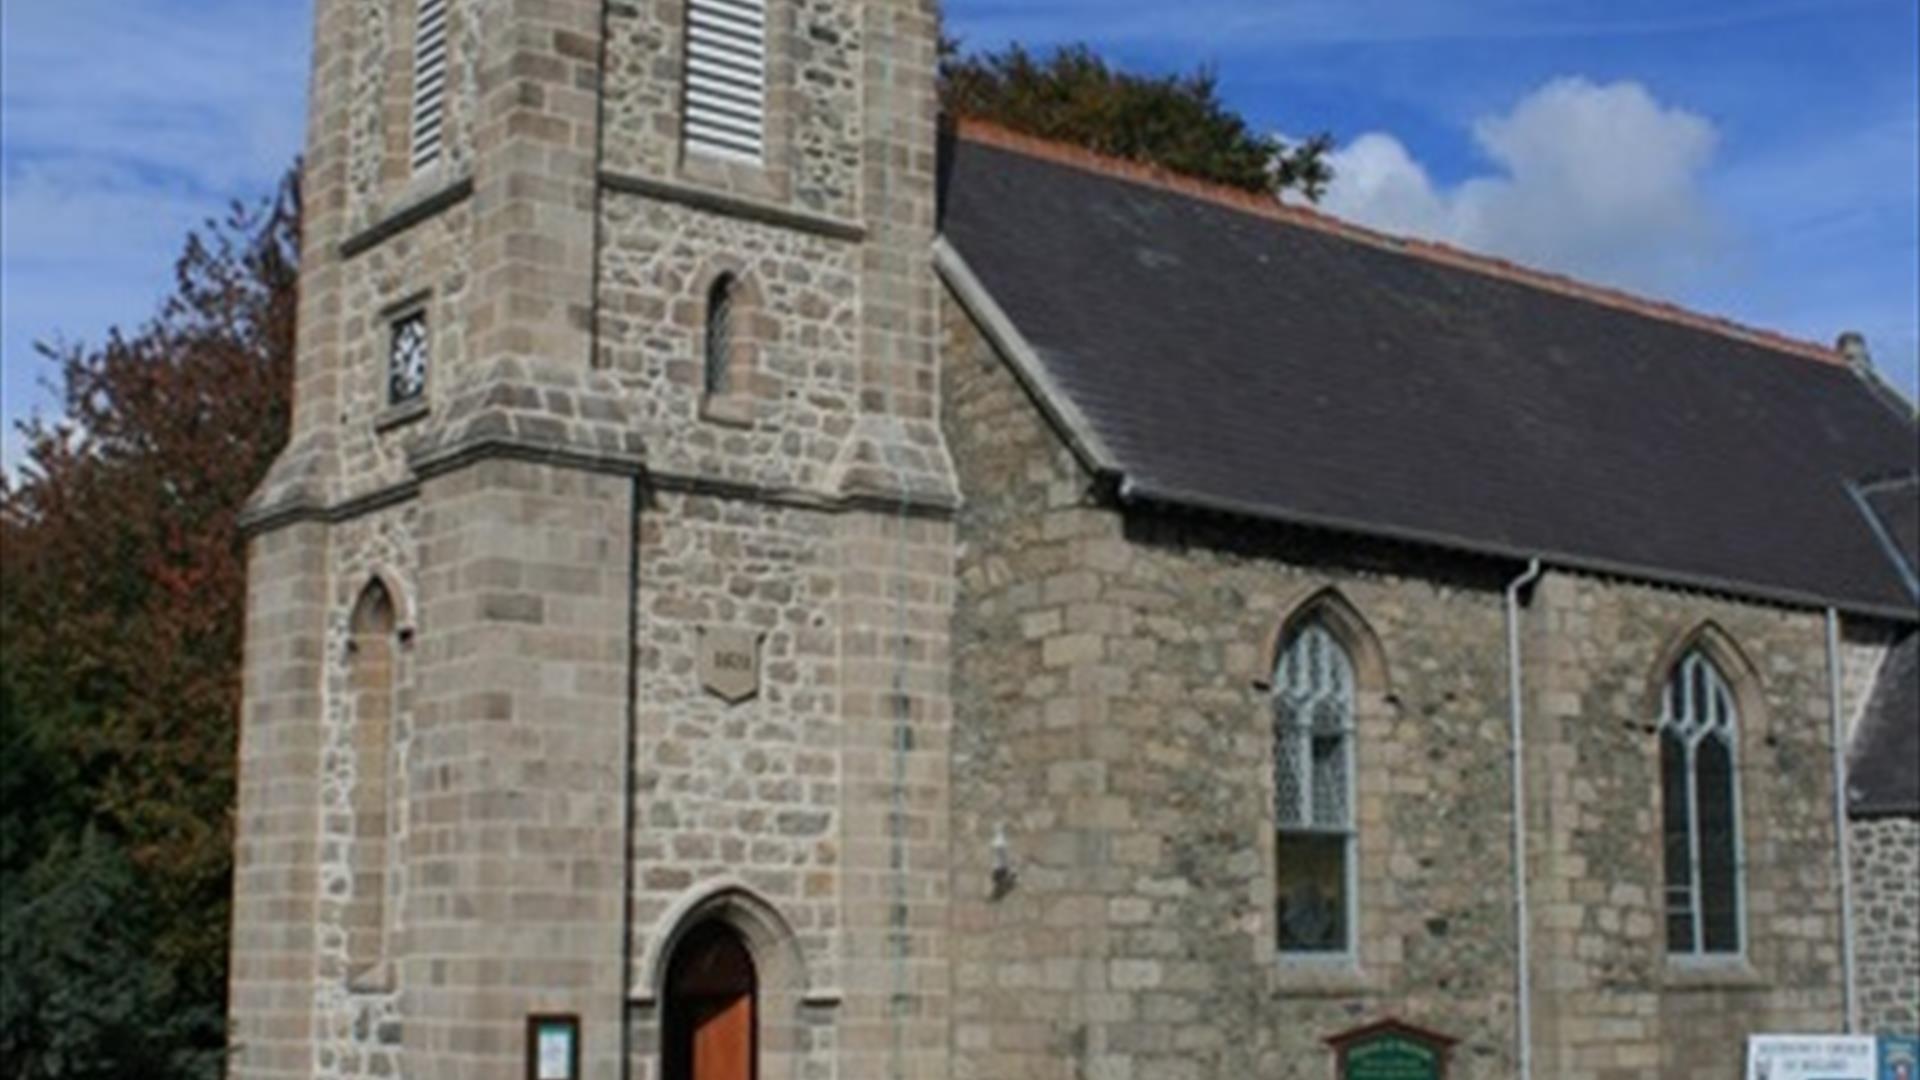 St. Bronach's, Kilbroney Parish Church EHOD 2022